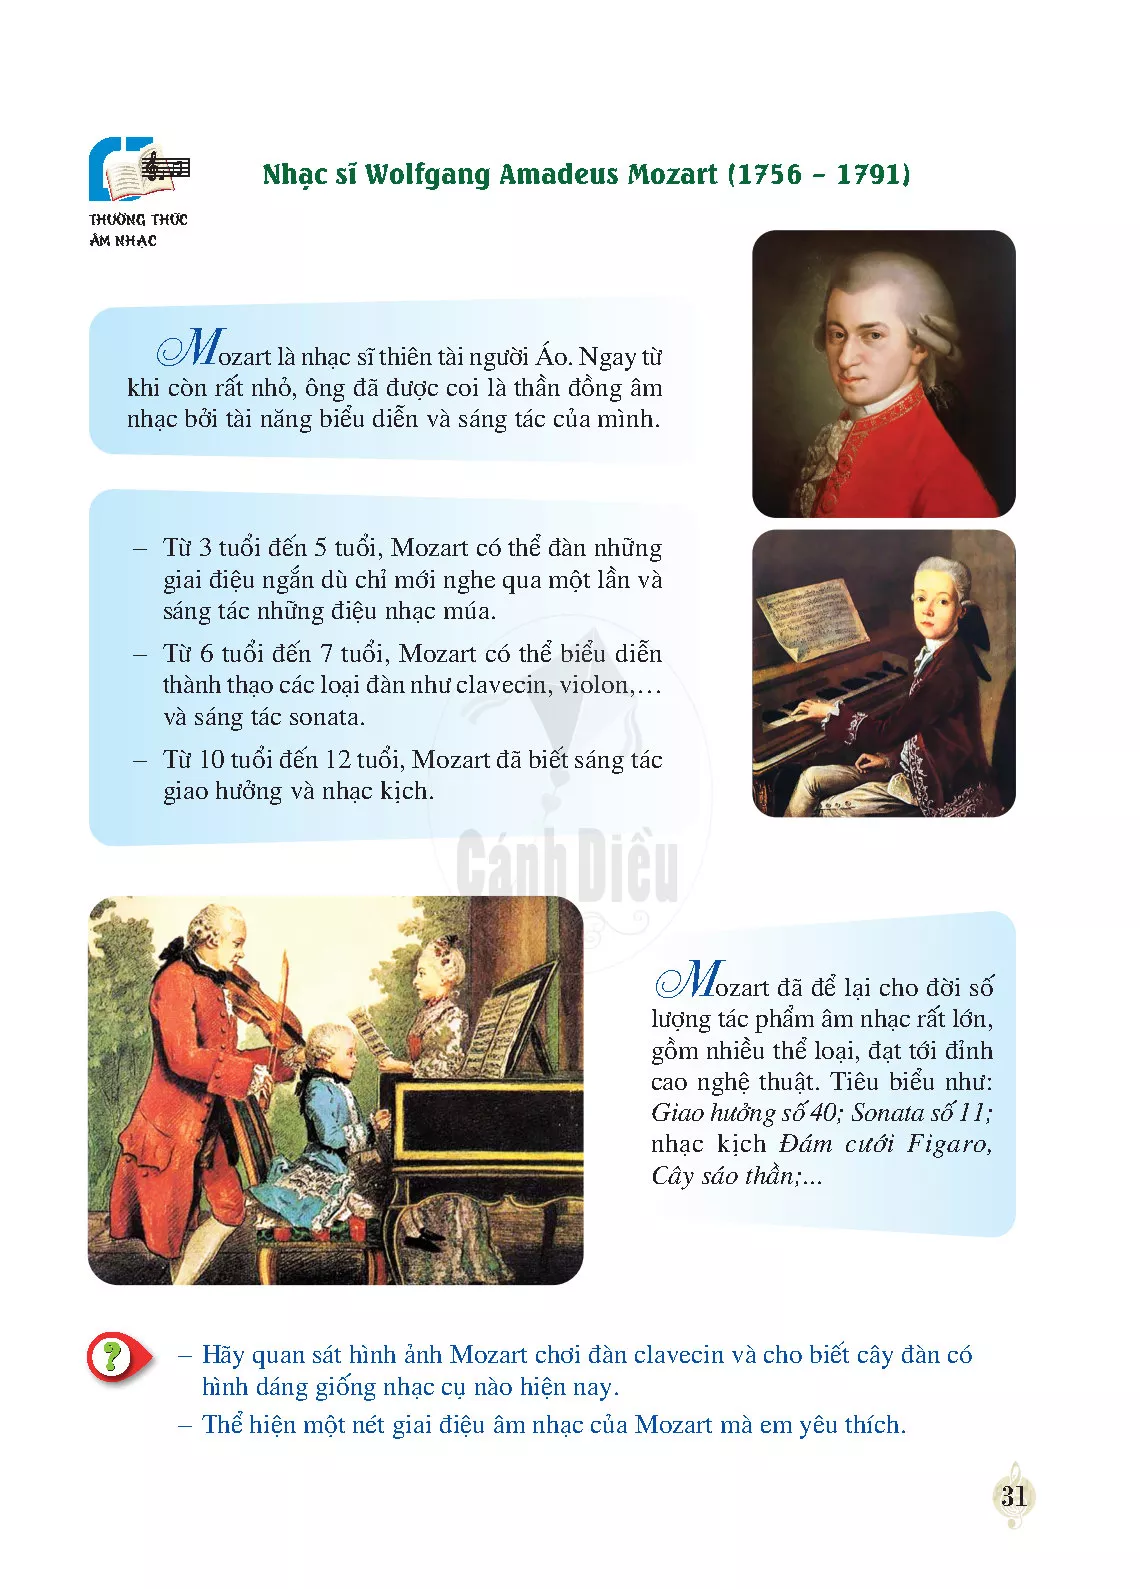 Thường thức âm nhạc: Nhạc sĩ Wolfgang Amadeus Mozart 